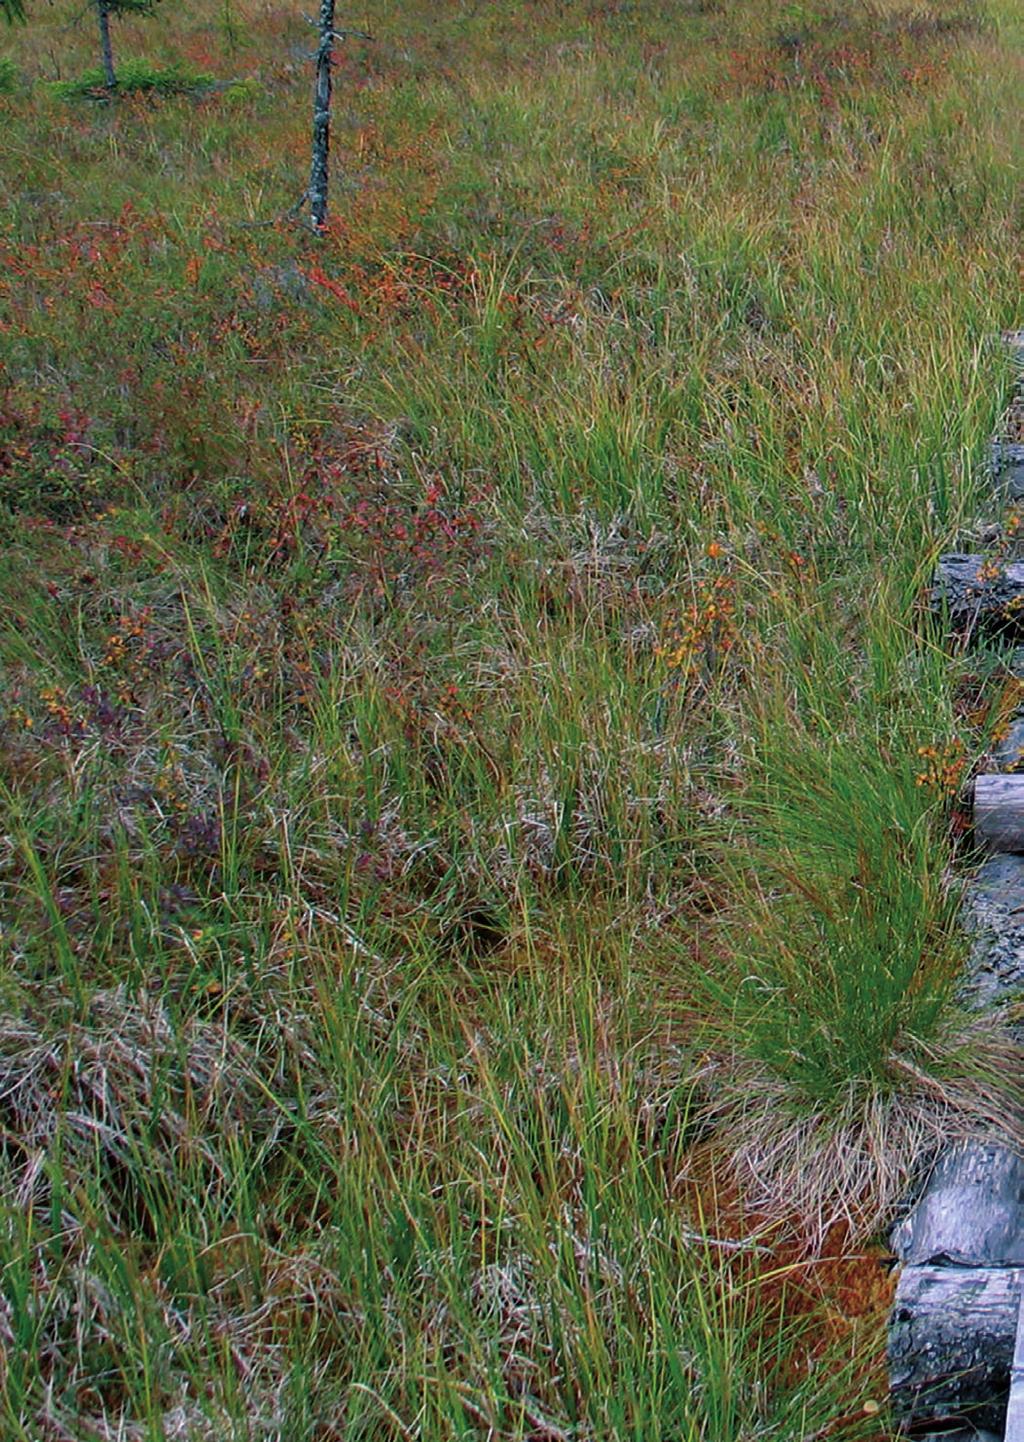 Suomen suot ehtymätön aarreaitta Suomalaisilla soilla on keskeinen rooli kansanperinteessä, luontoelementtinä, luonnonvarana ja ilmastonmuutoksen osatekijänä.